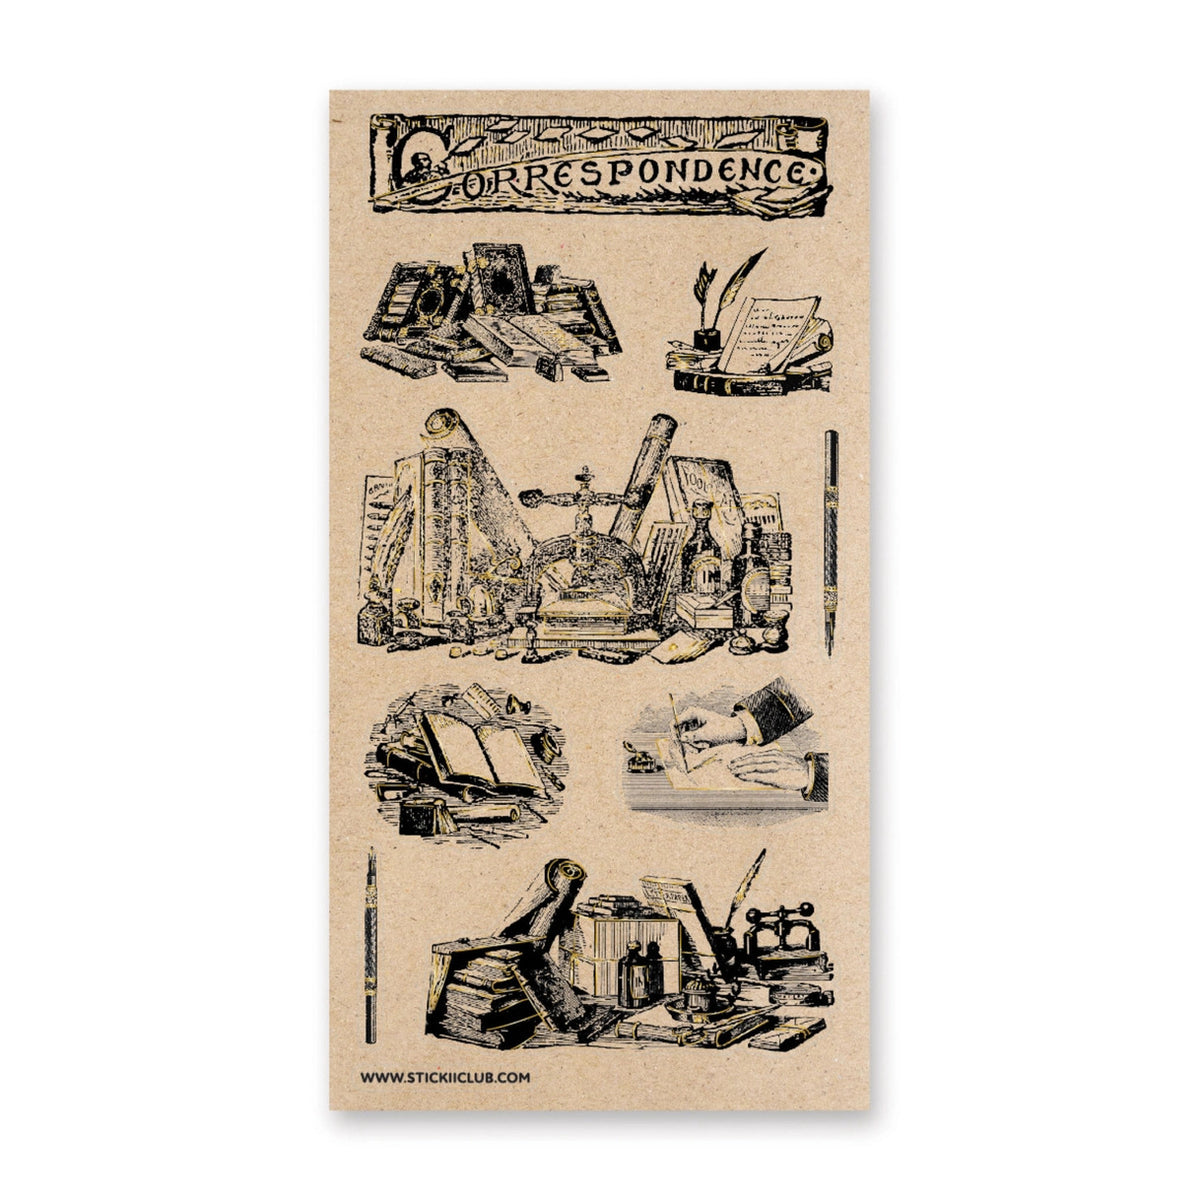 STICKII Sticker Sheet - Vintage Correspondence